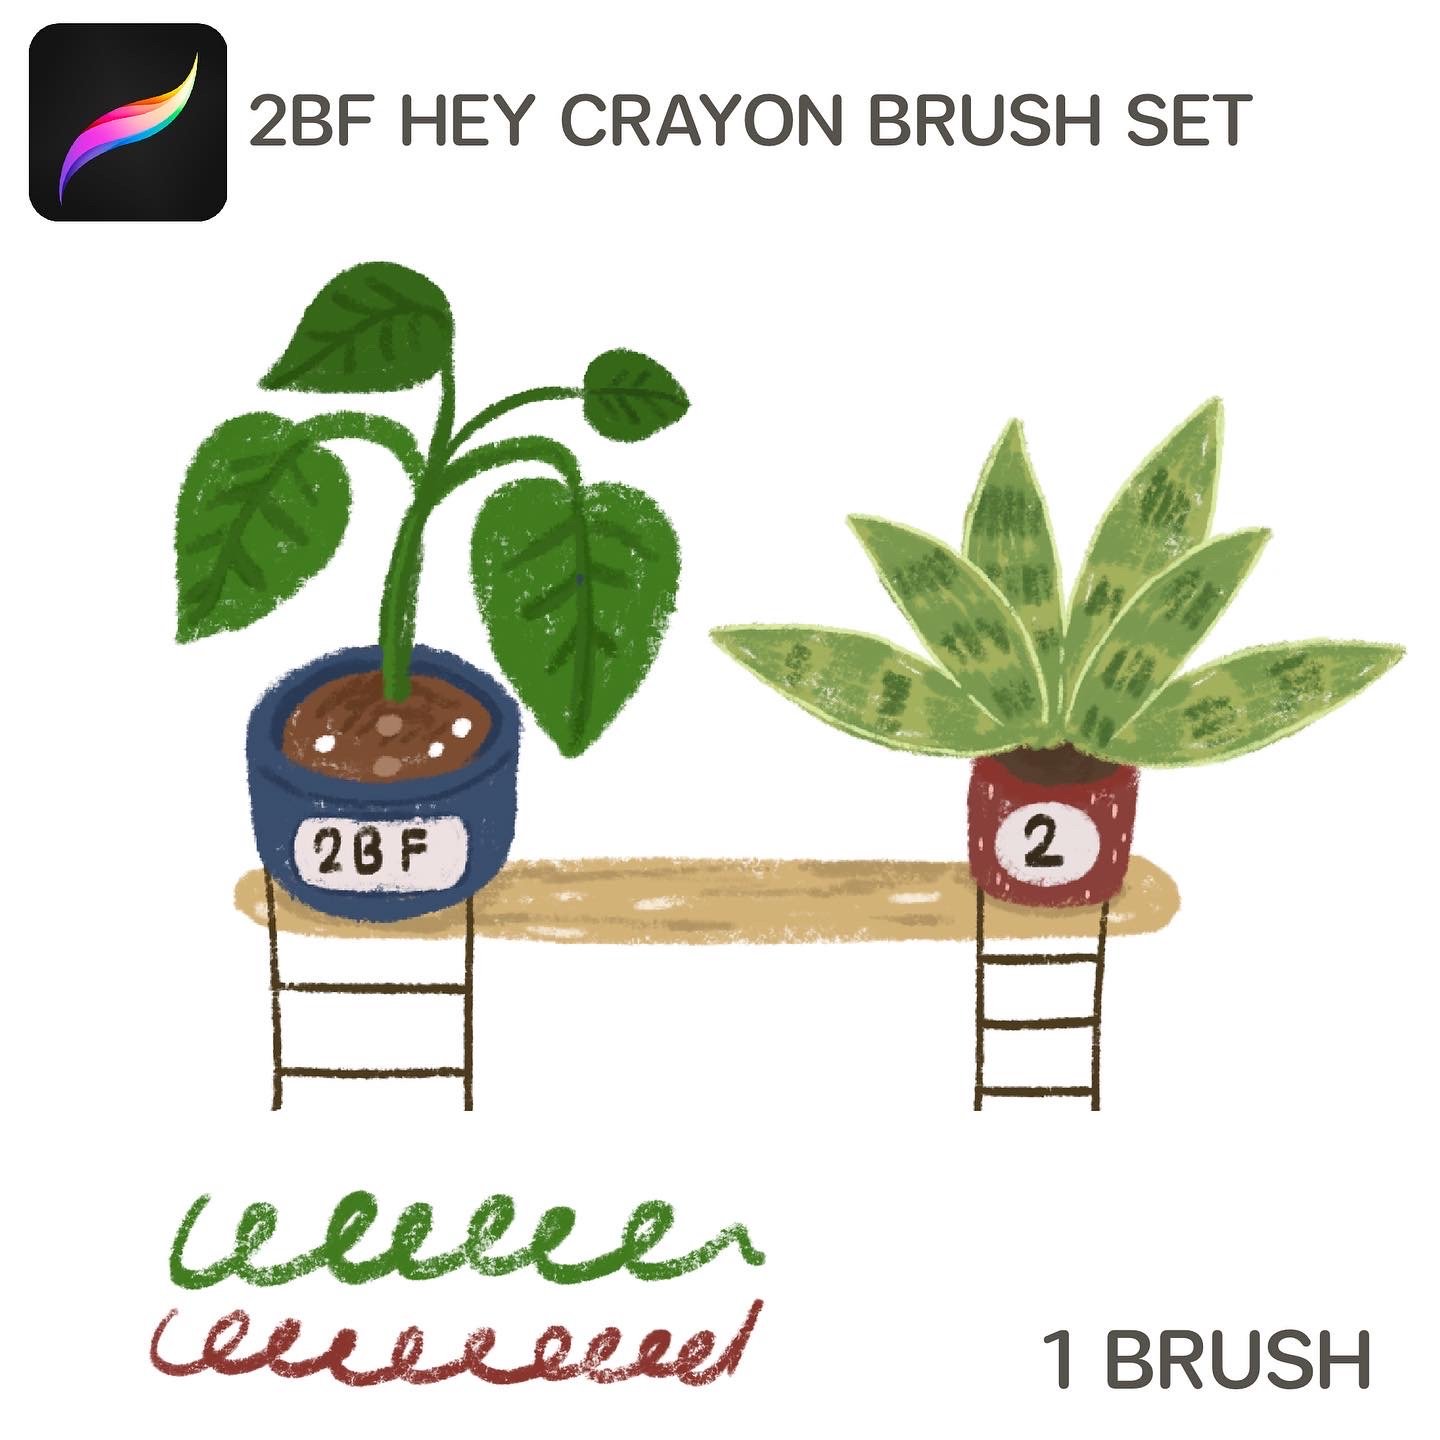 2BF Hey crayon Brush set | PROCREATE BRUSH